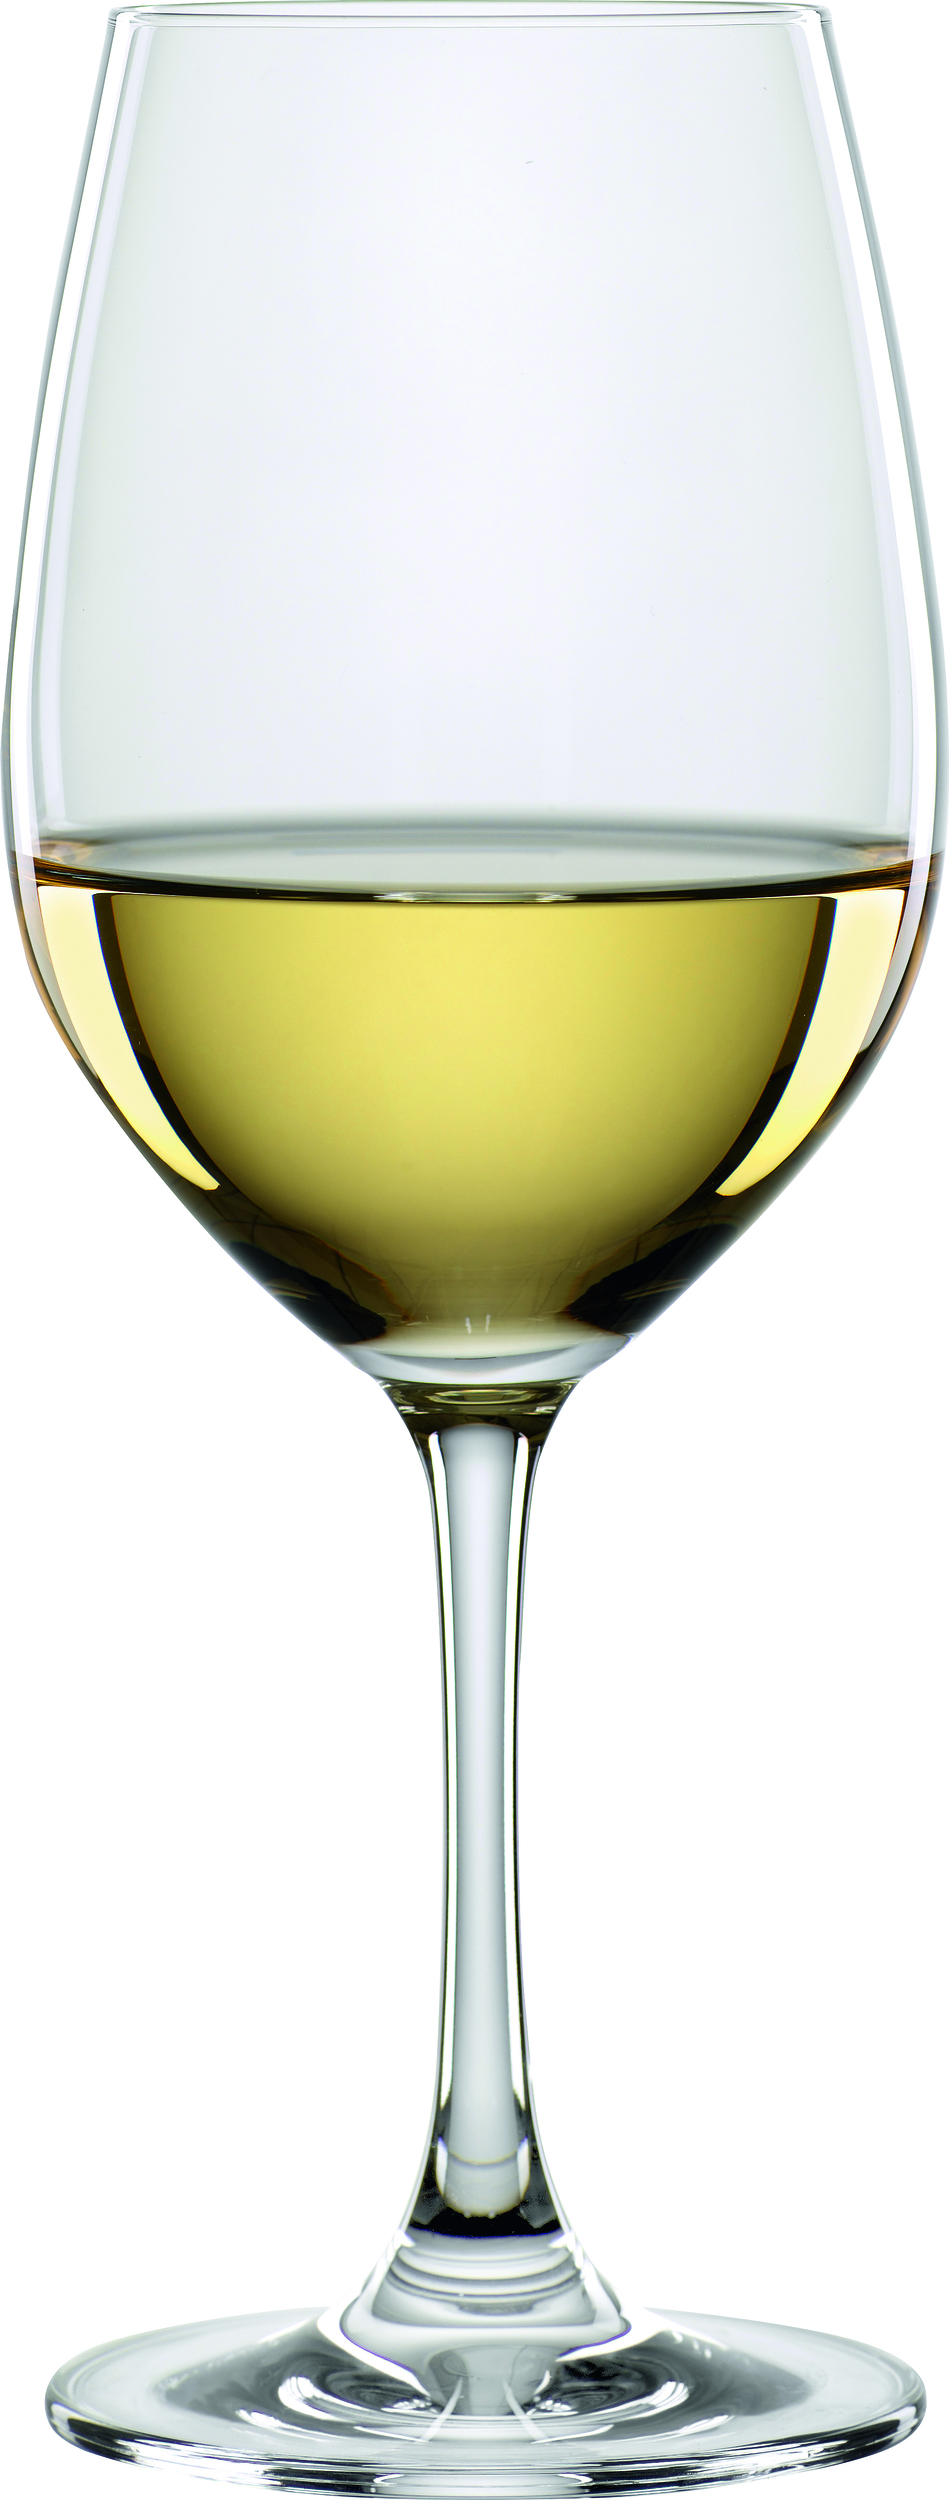 גביע / כוס יין לבן 470 מ"ל - Spiegelau